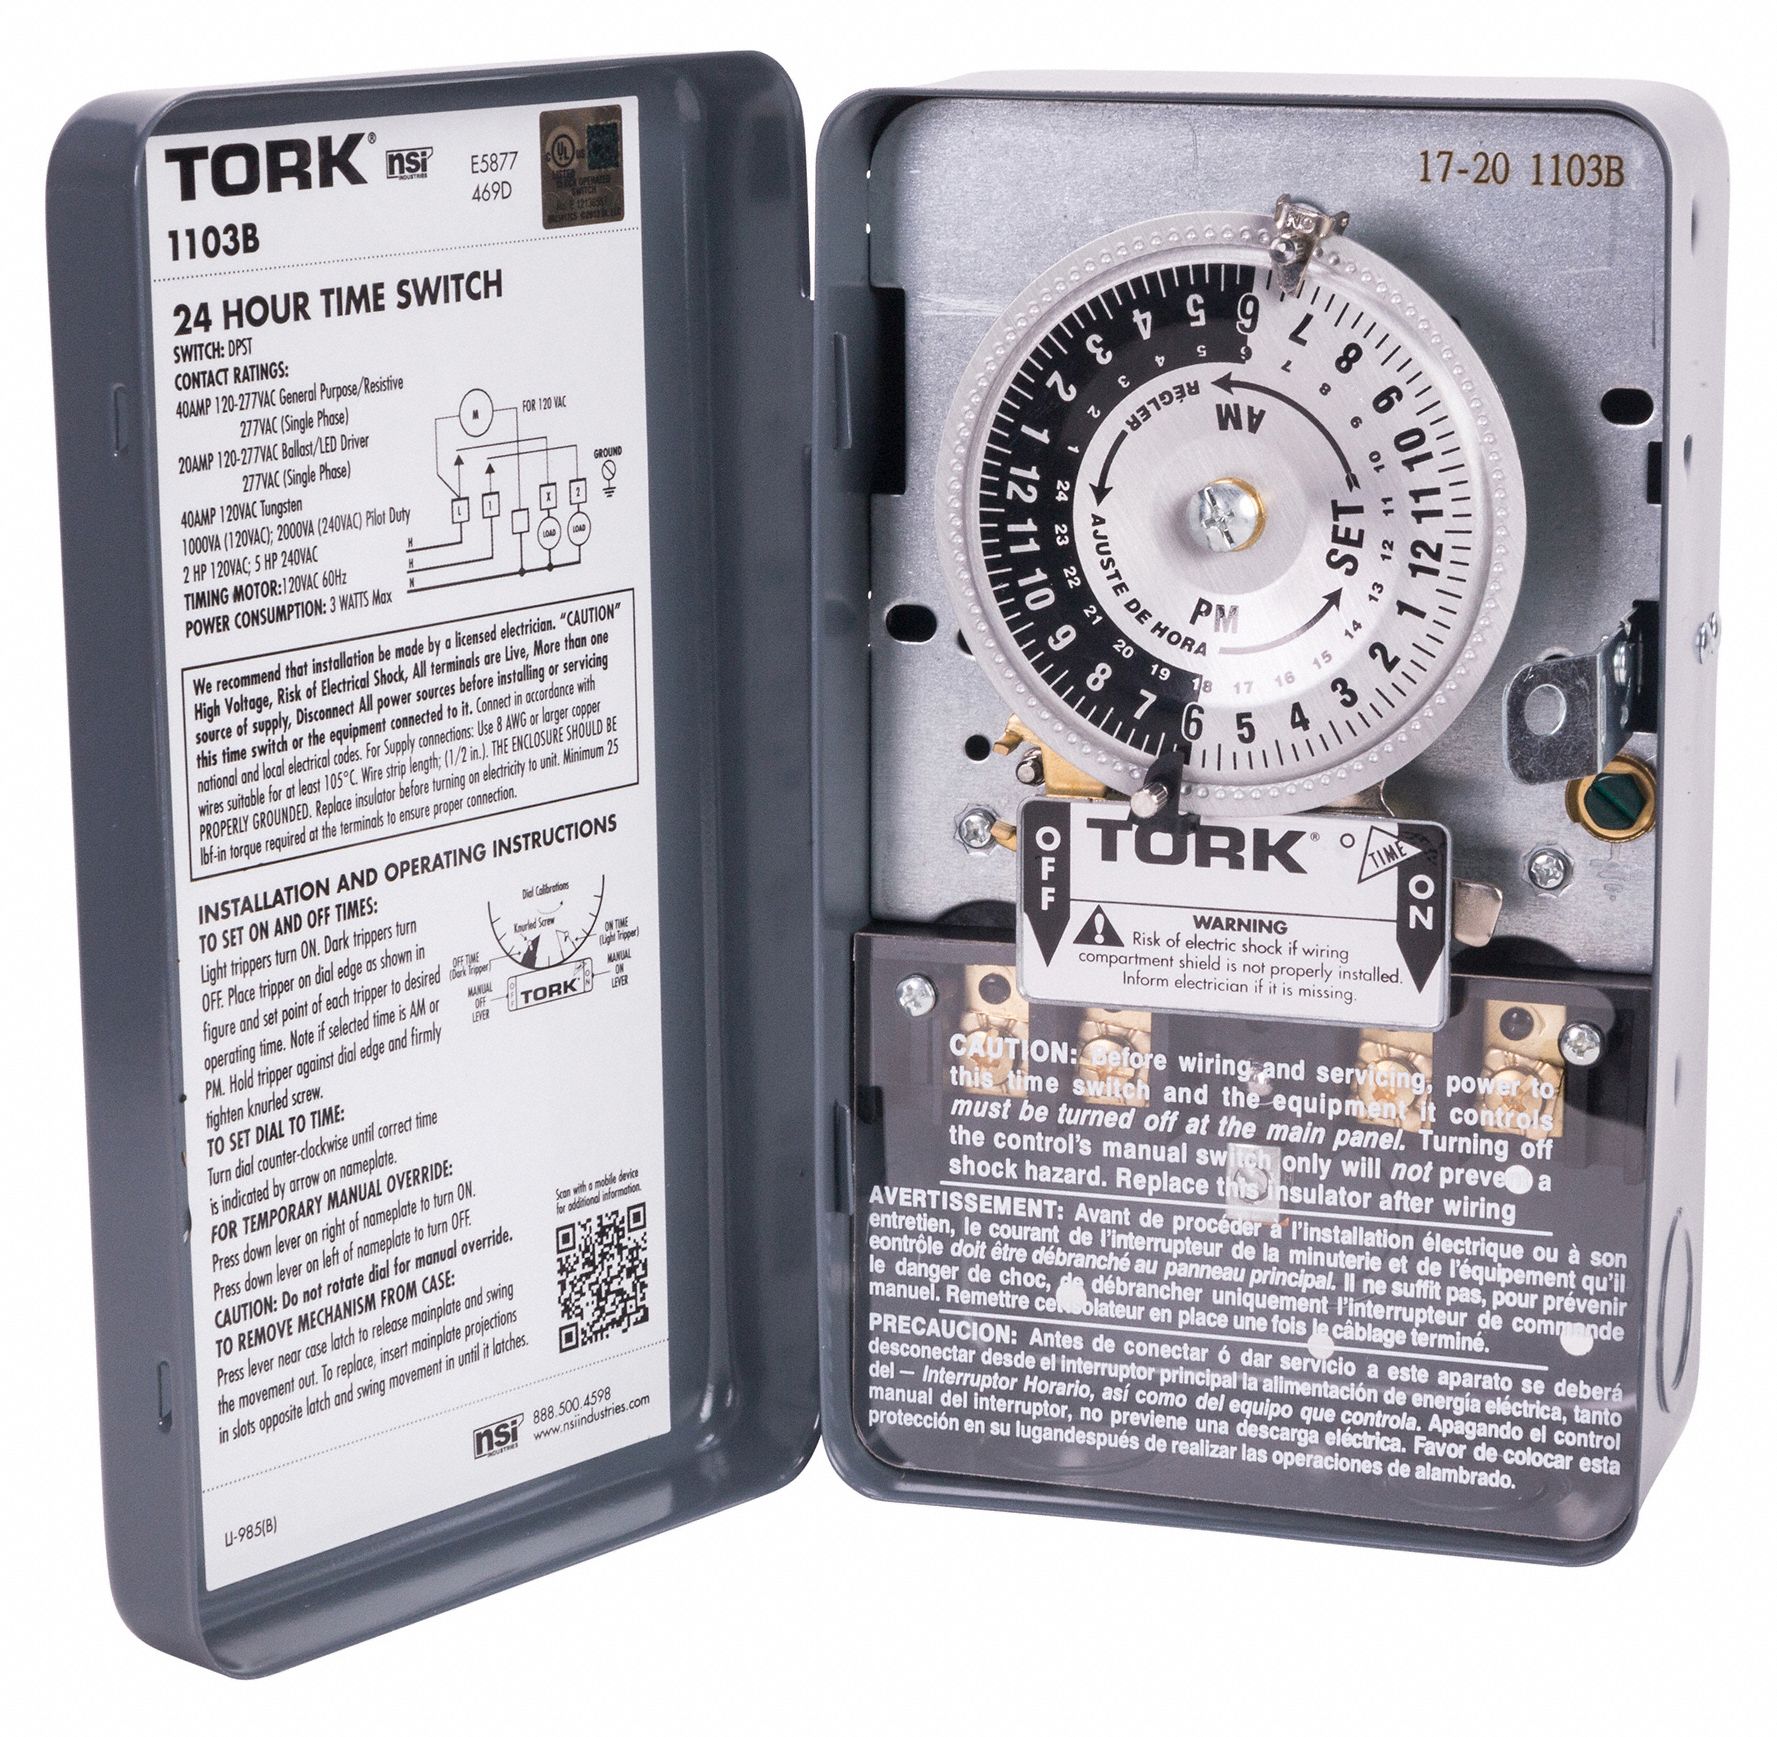 TORK Electromechanical Timer, 120V AC Voltage, 40 A Amps, Steel, 22 hr